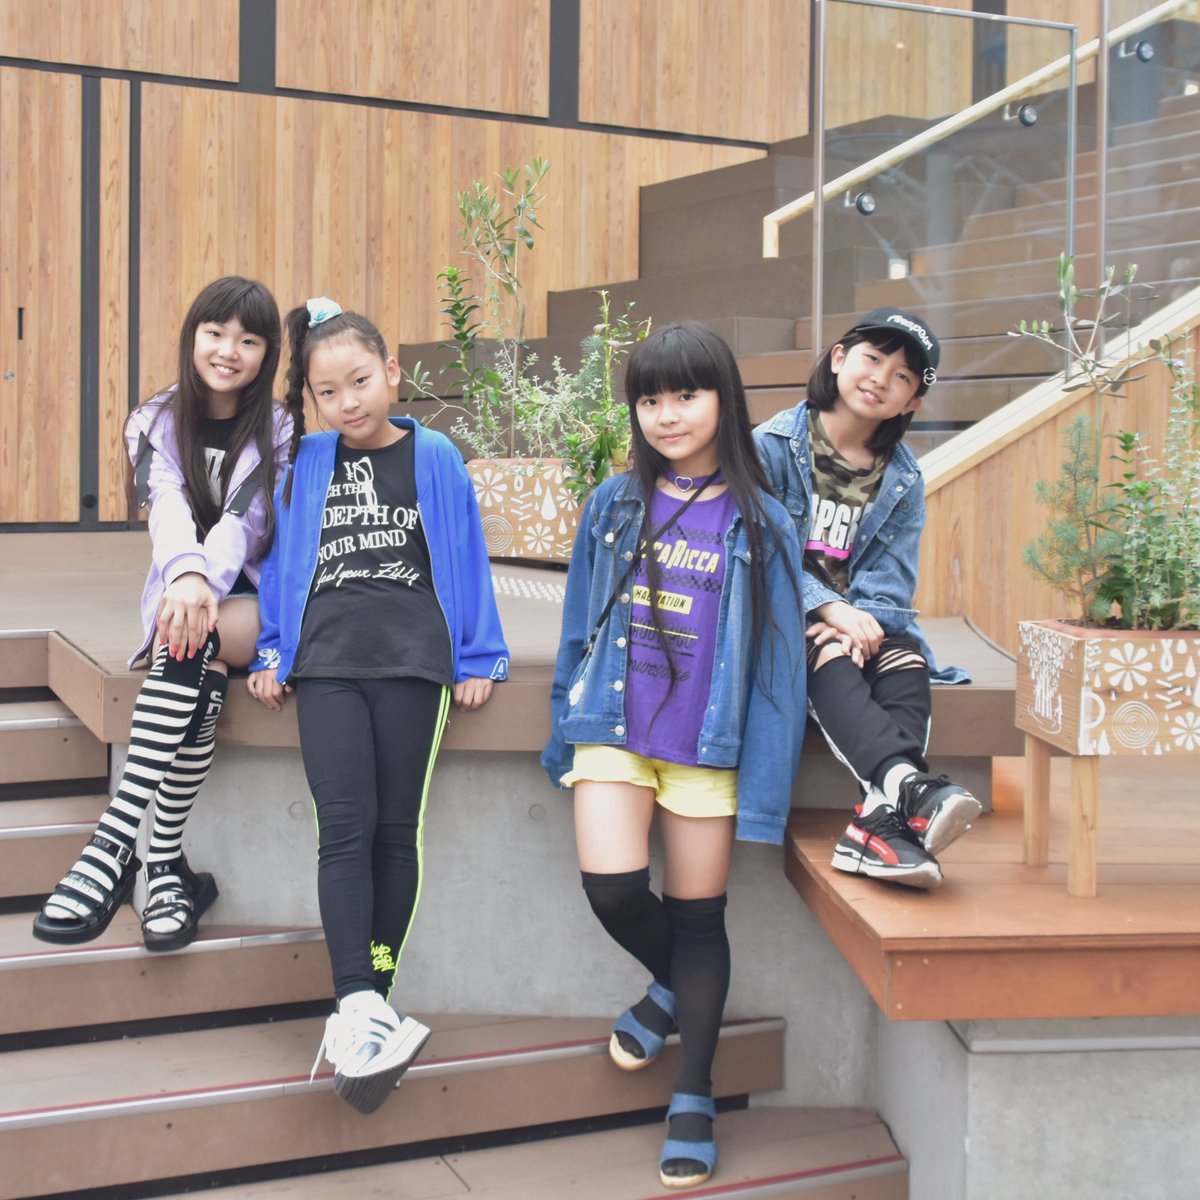 Hati Style Kiki Studio Twitter પર 女子小学生モデルユニットmoca Girls 7 14 日 マチニワで開催されるmusic Lovers Meetingに出演します ブース 10 00 16 00 ステージ 14 50 15 マチニワでお待ちしてます